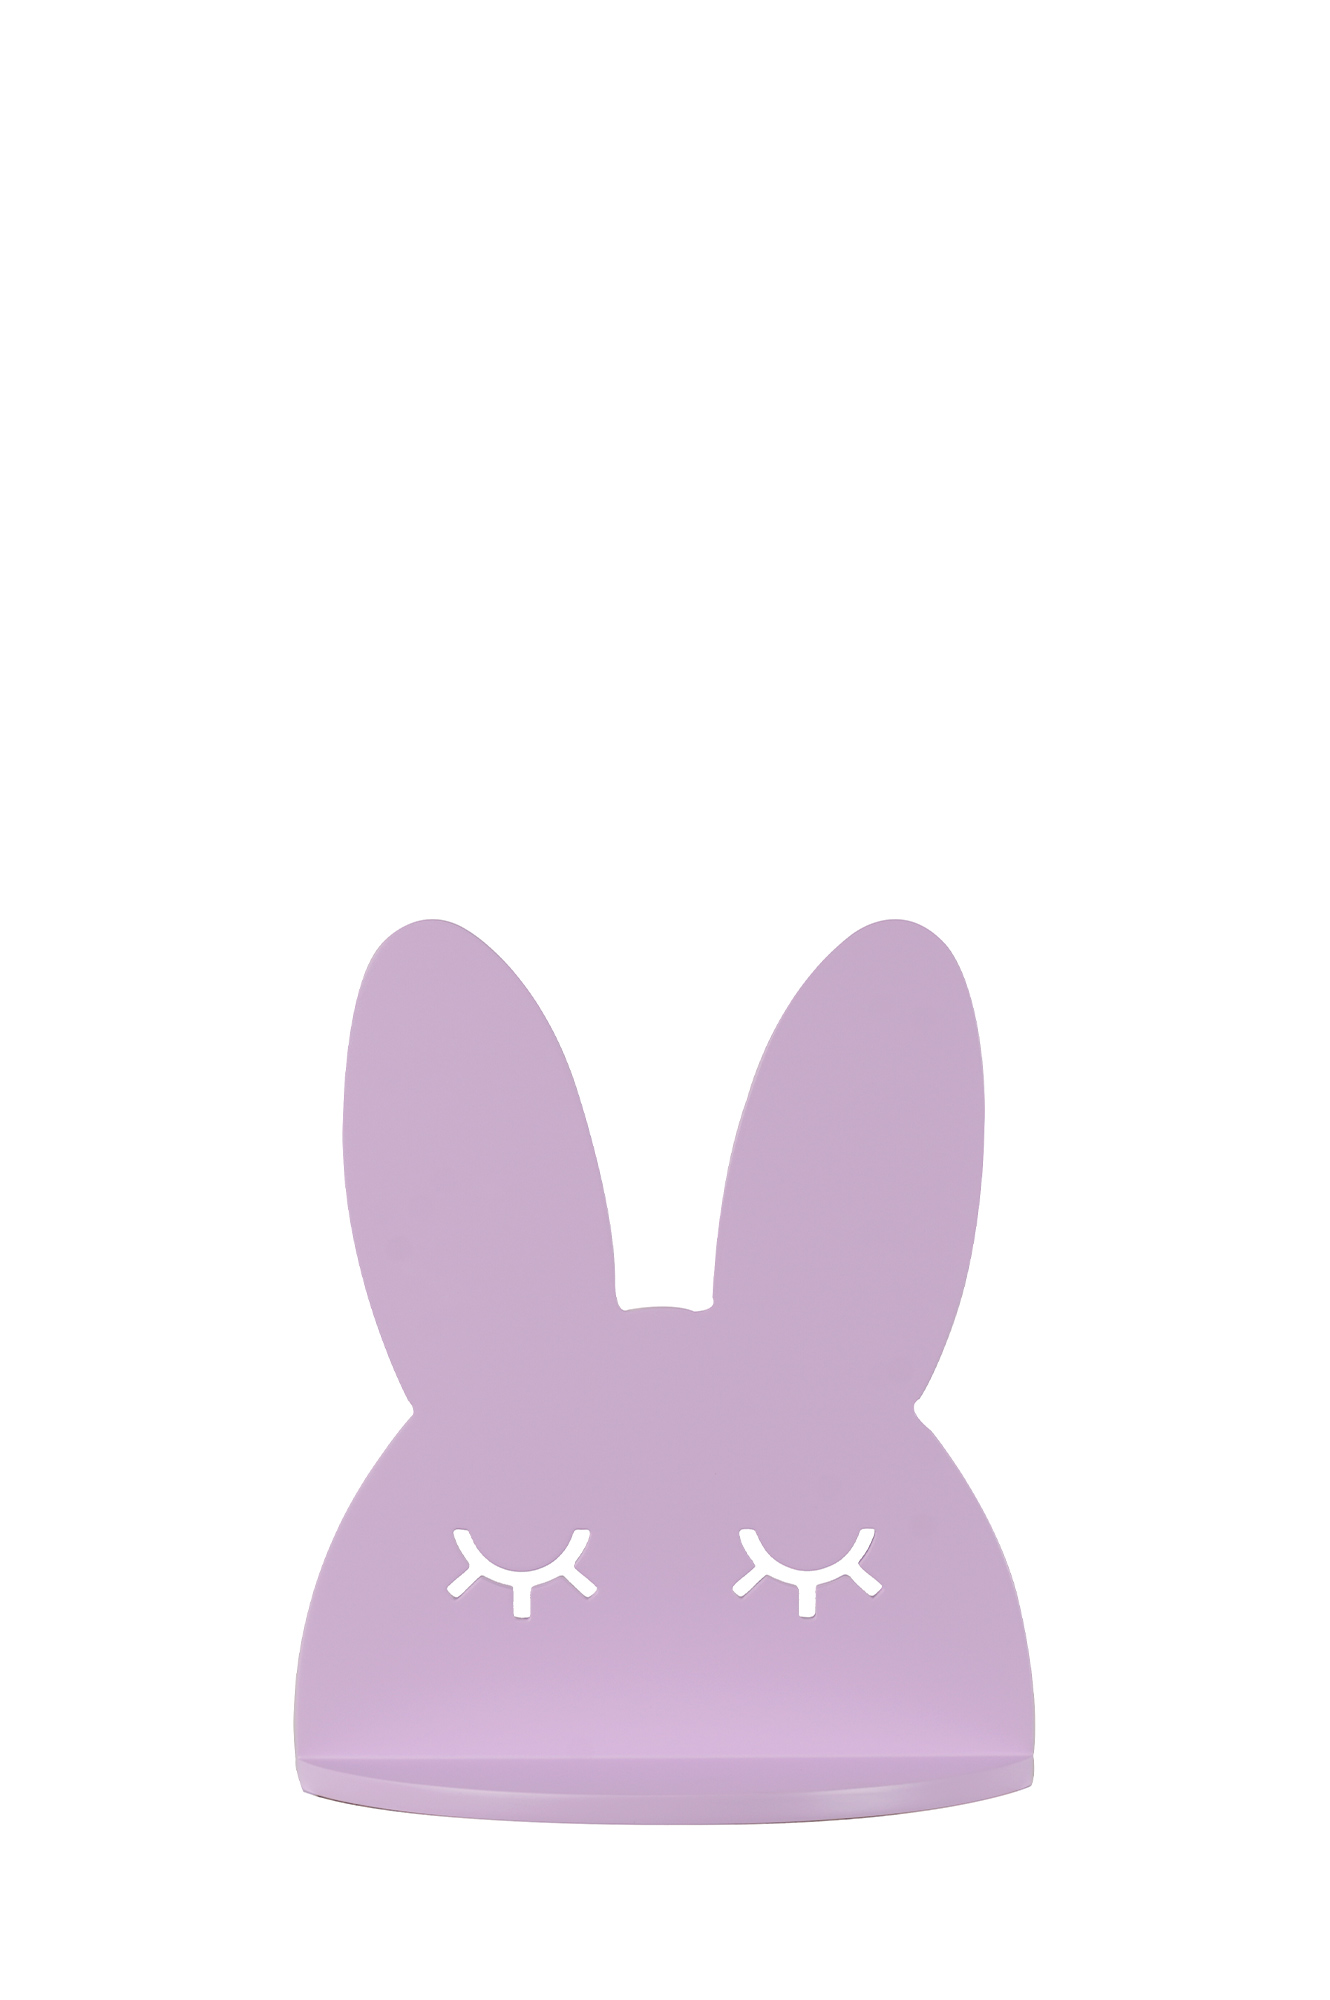 شلف خرگوش (بنفش-صورتی)